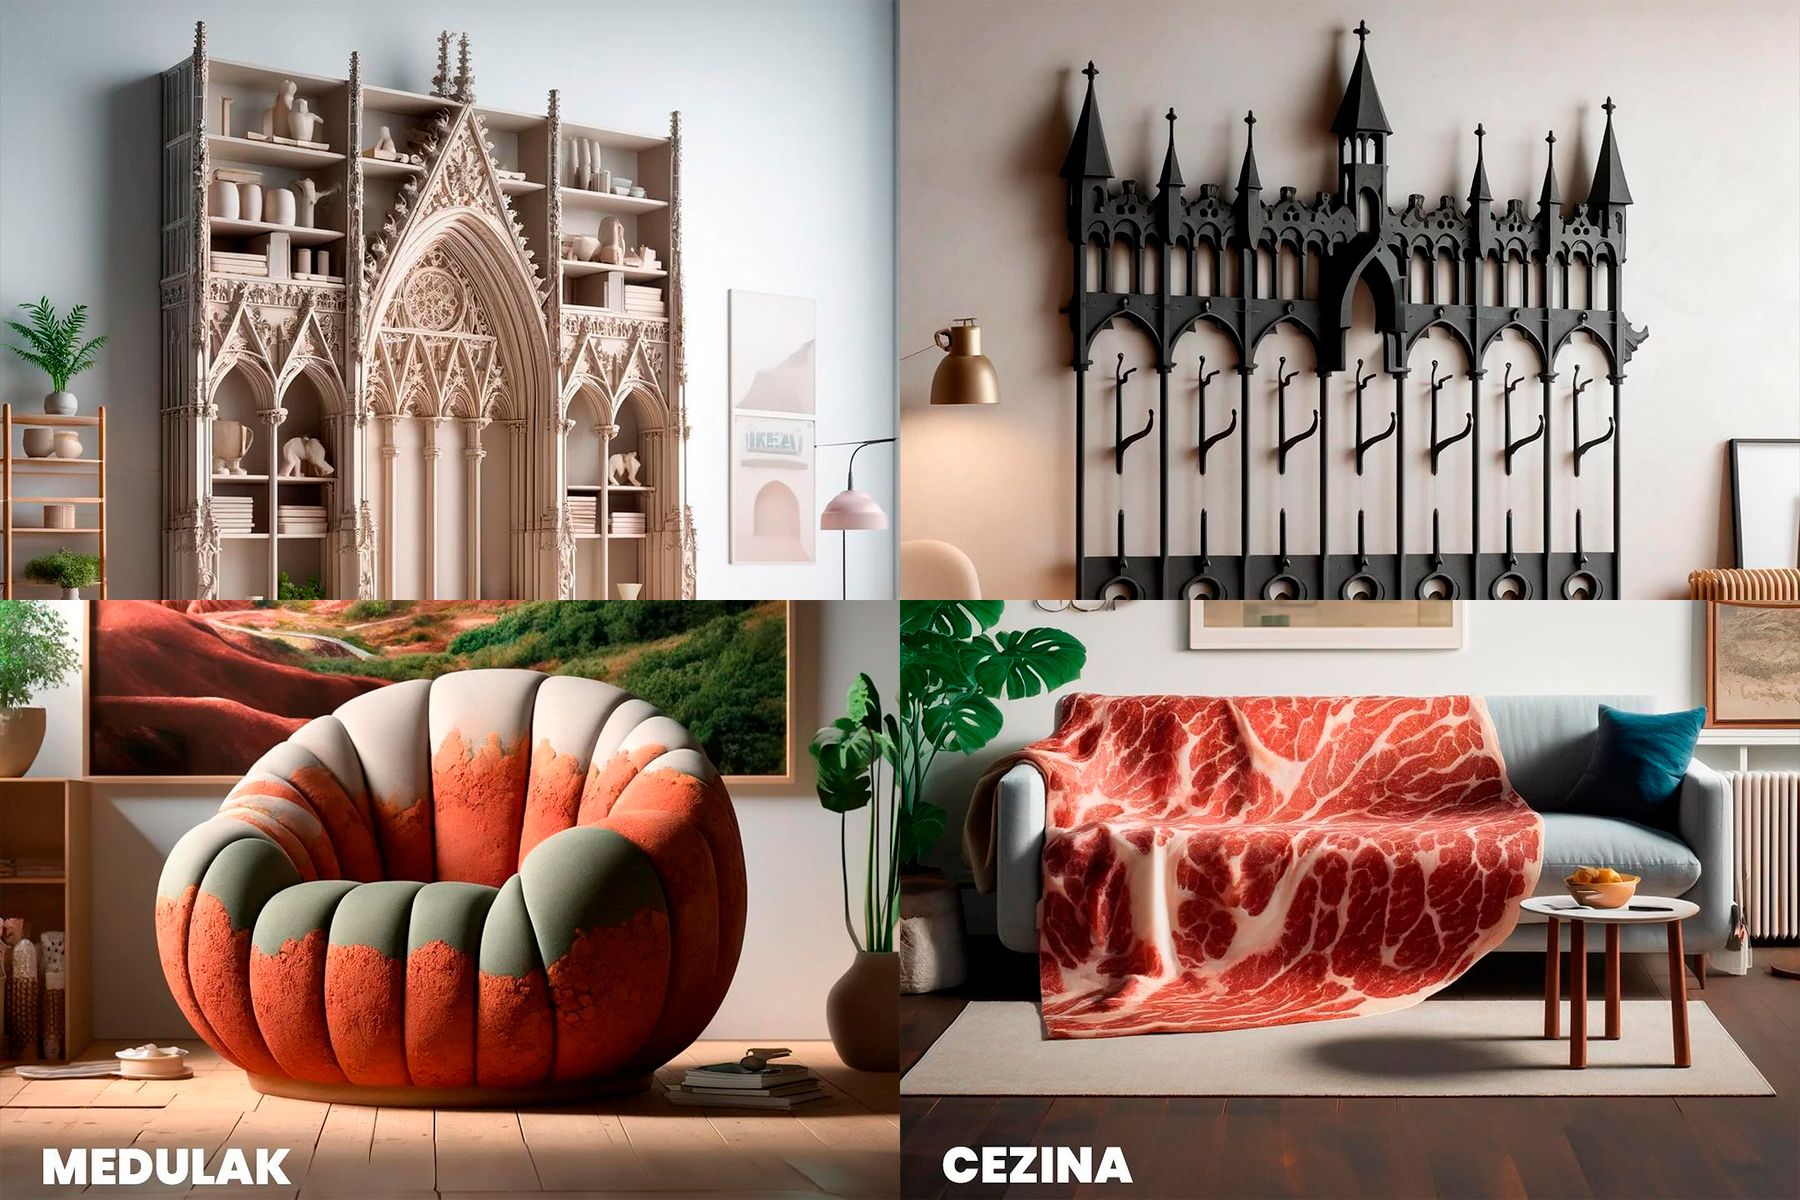 Conexión Tierrina 'lanza' una colección ficticia de muebles de IKEA inspirados en León